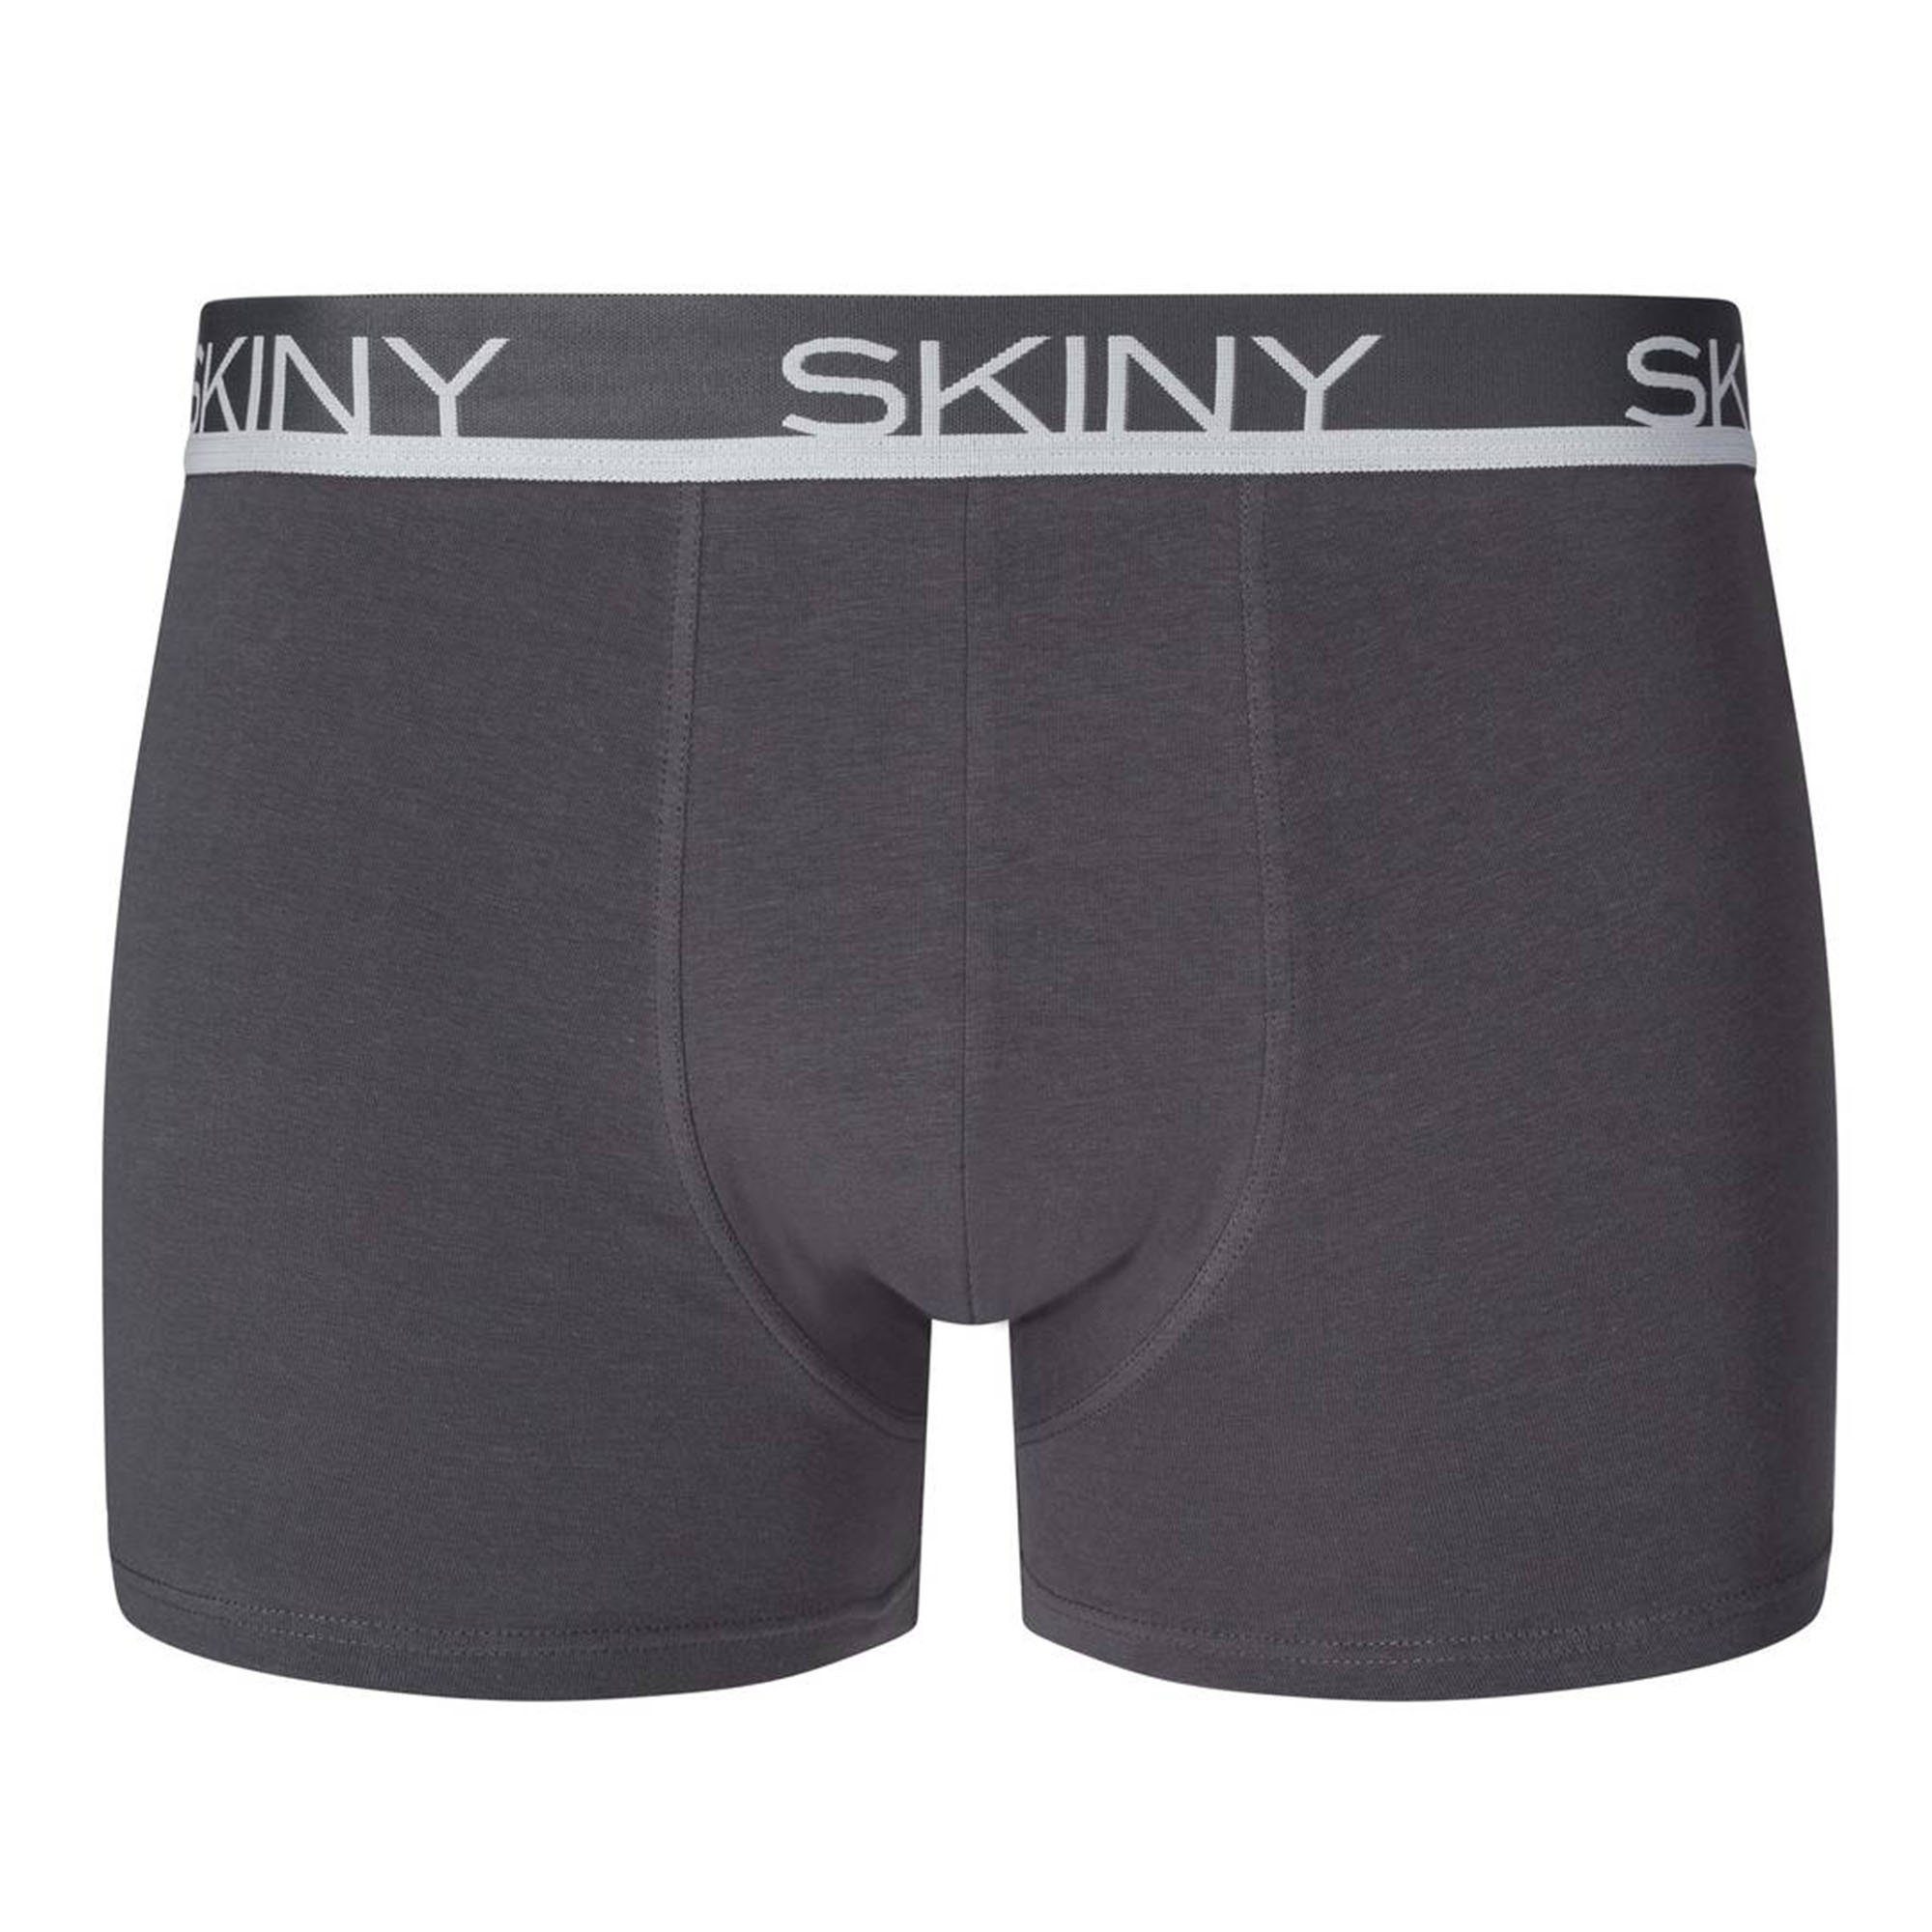 Grau/Blau/Schwarz Boxer Boxer - Trunks, Herren 3er Pants Shorts Skiny Pack